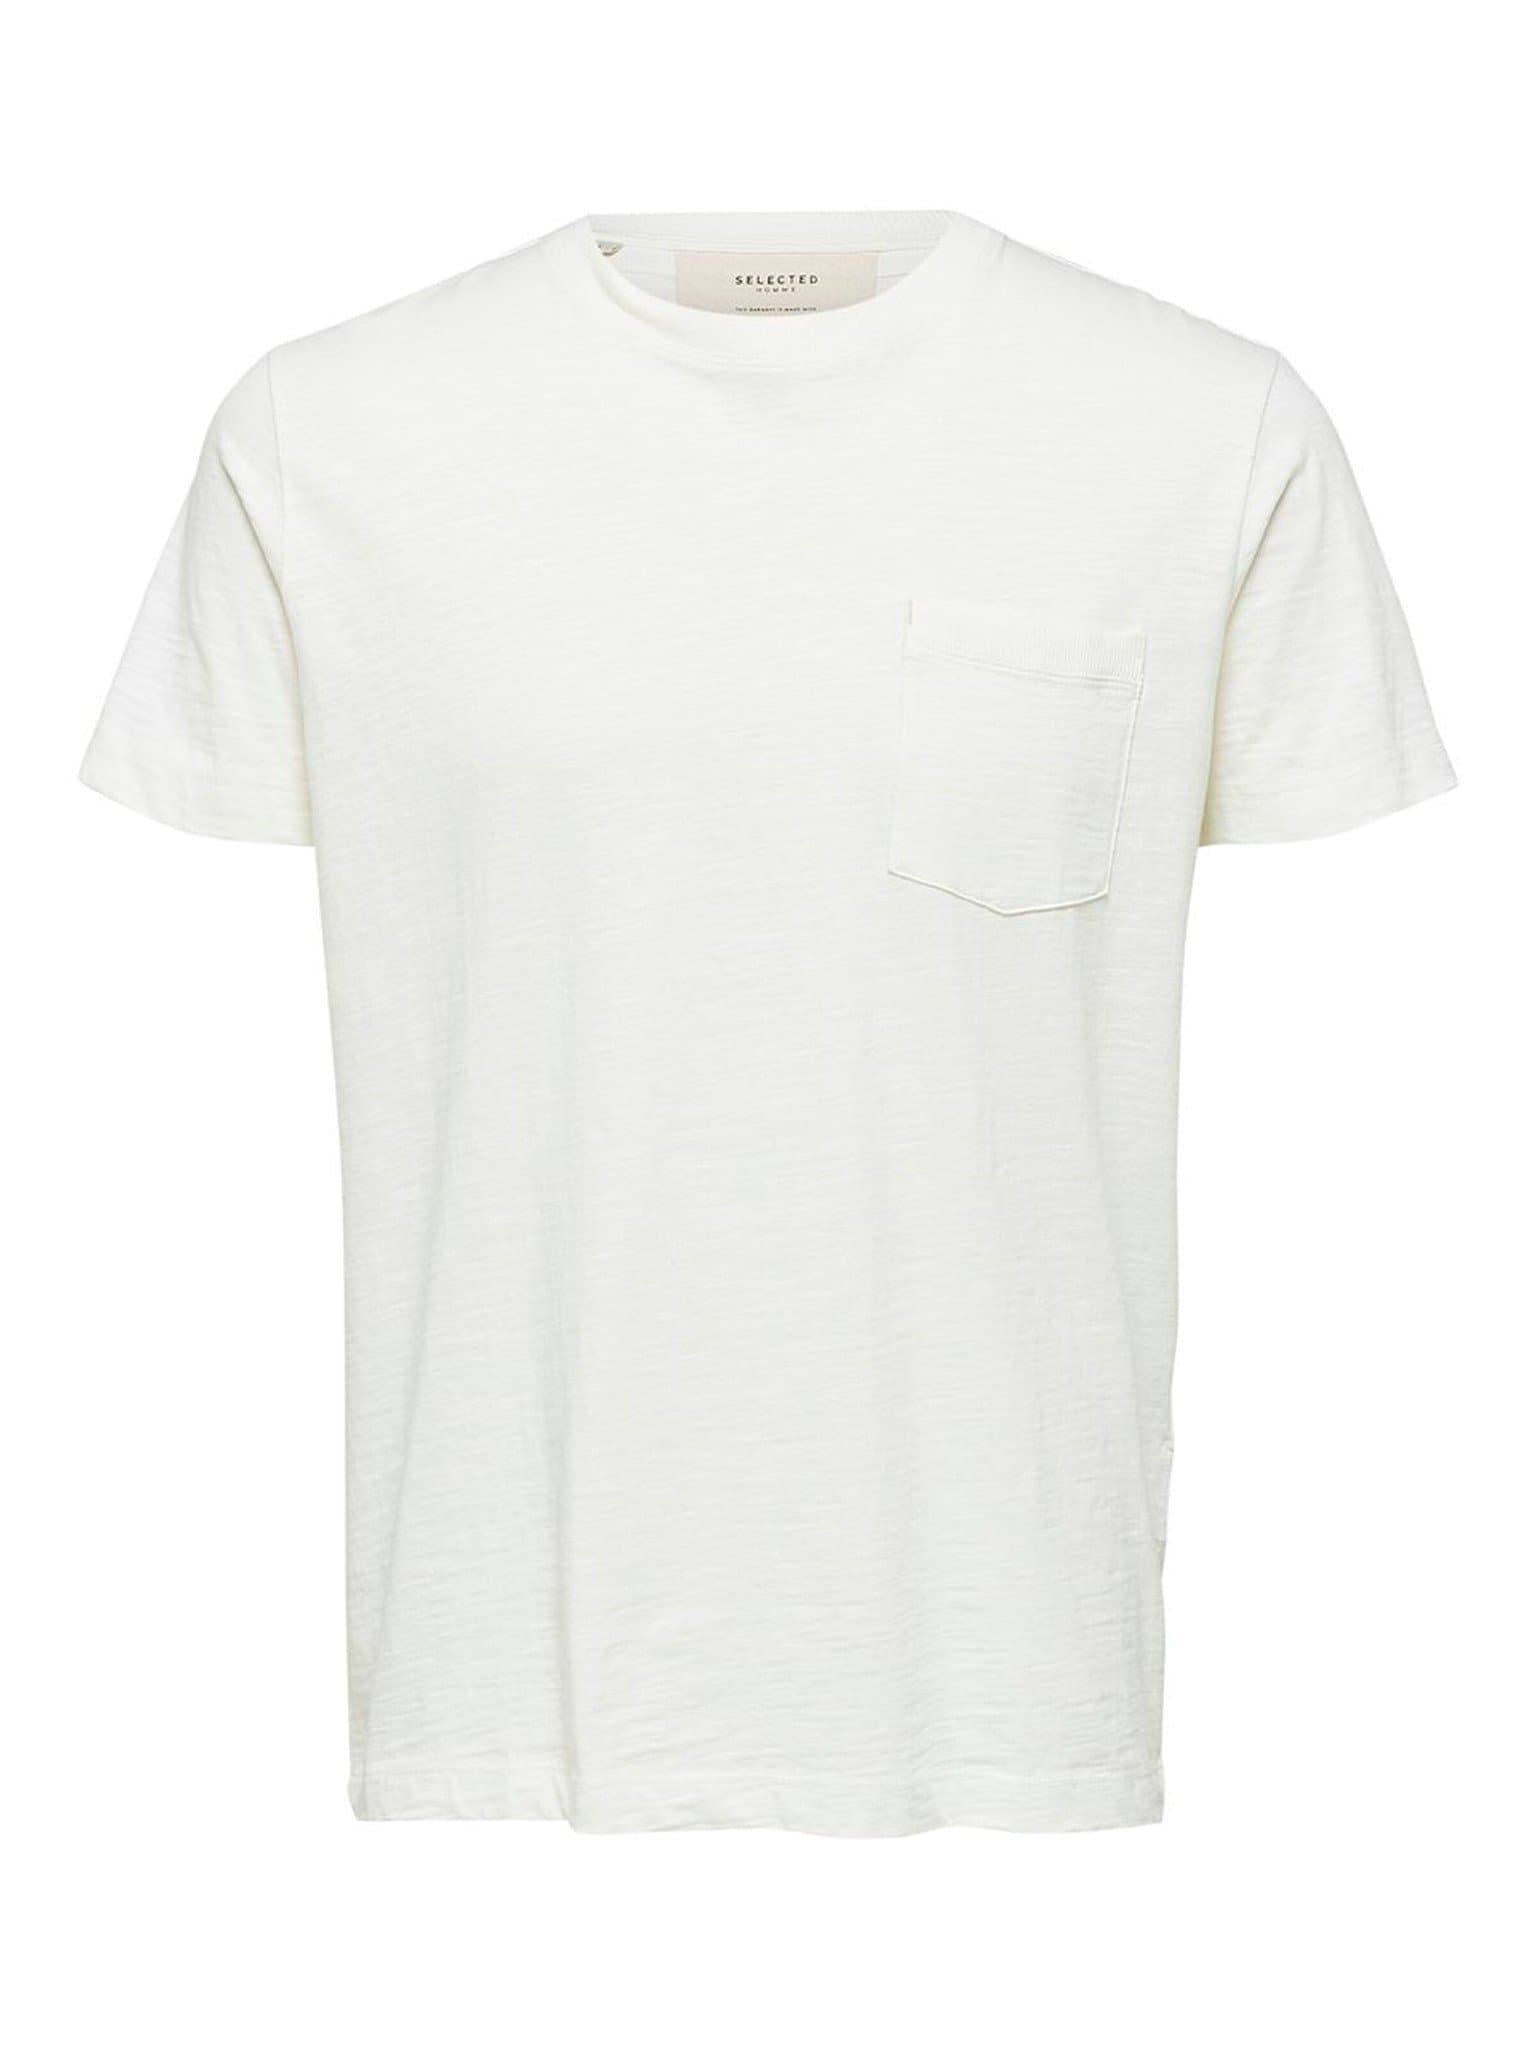 Laflamme- T-shirt blanc à poche - Selected